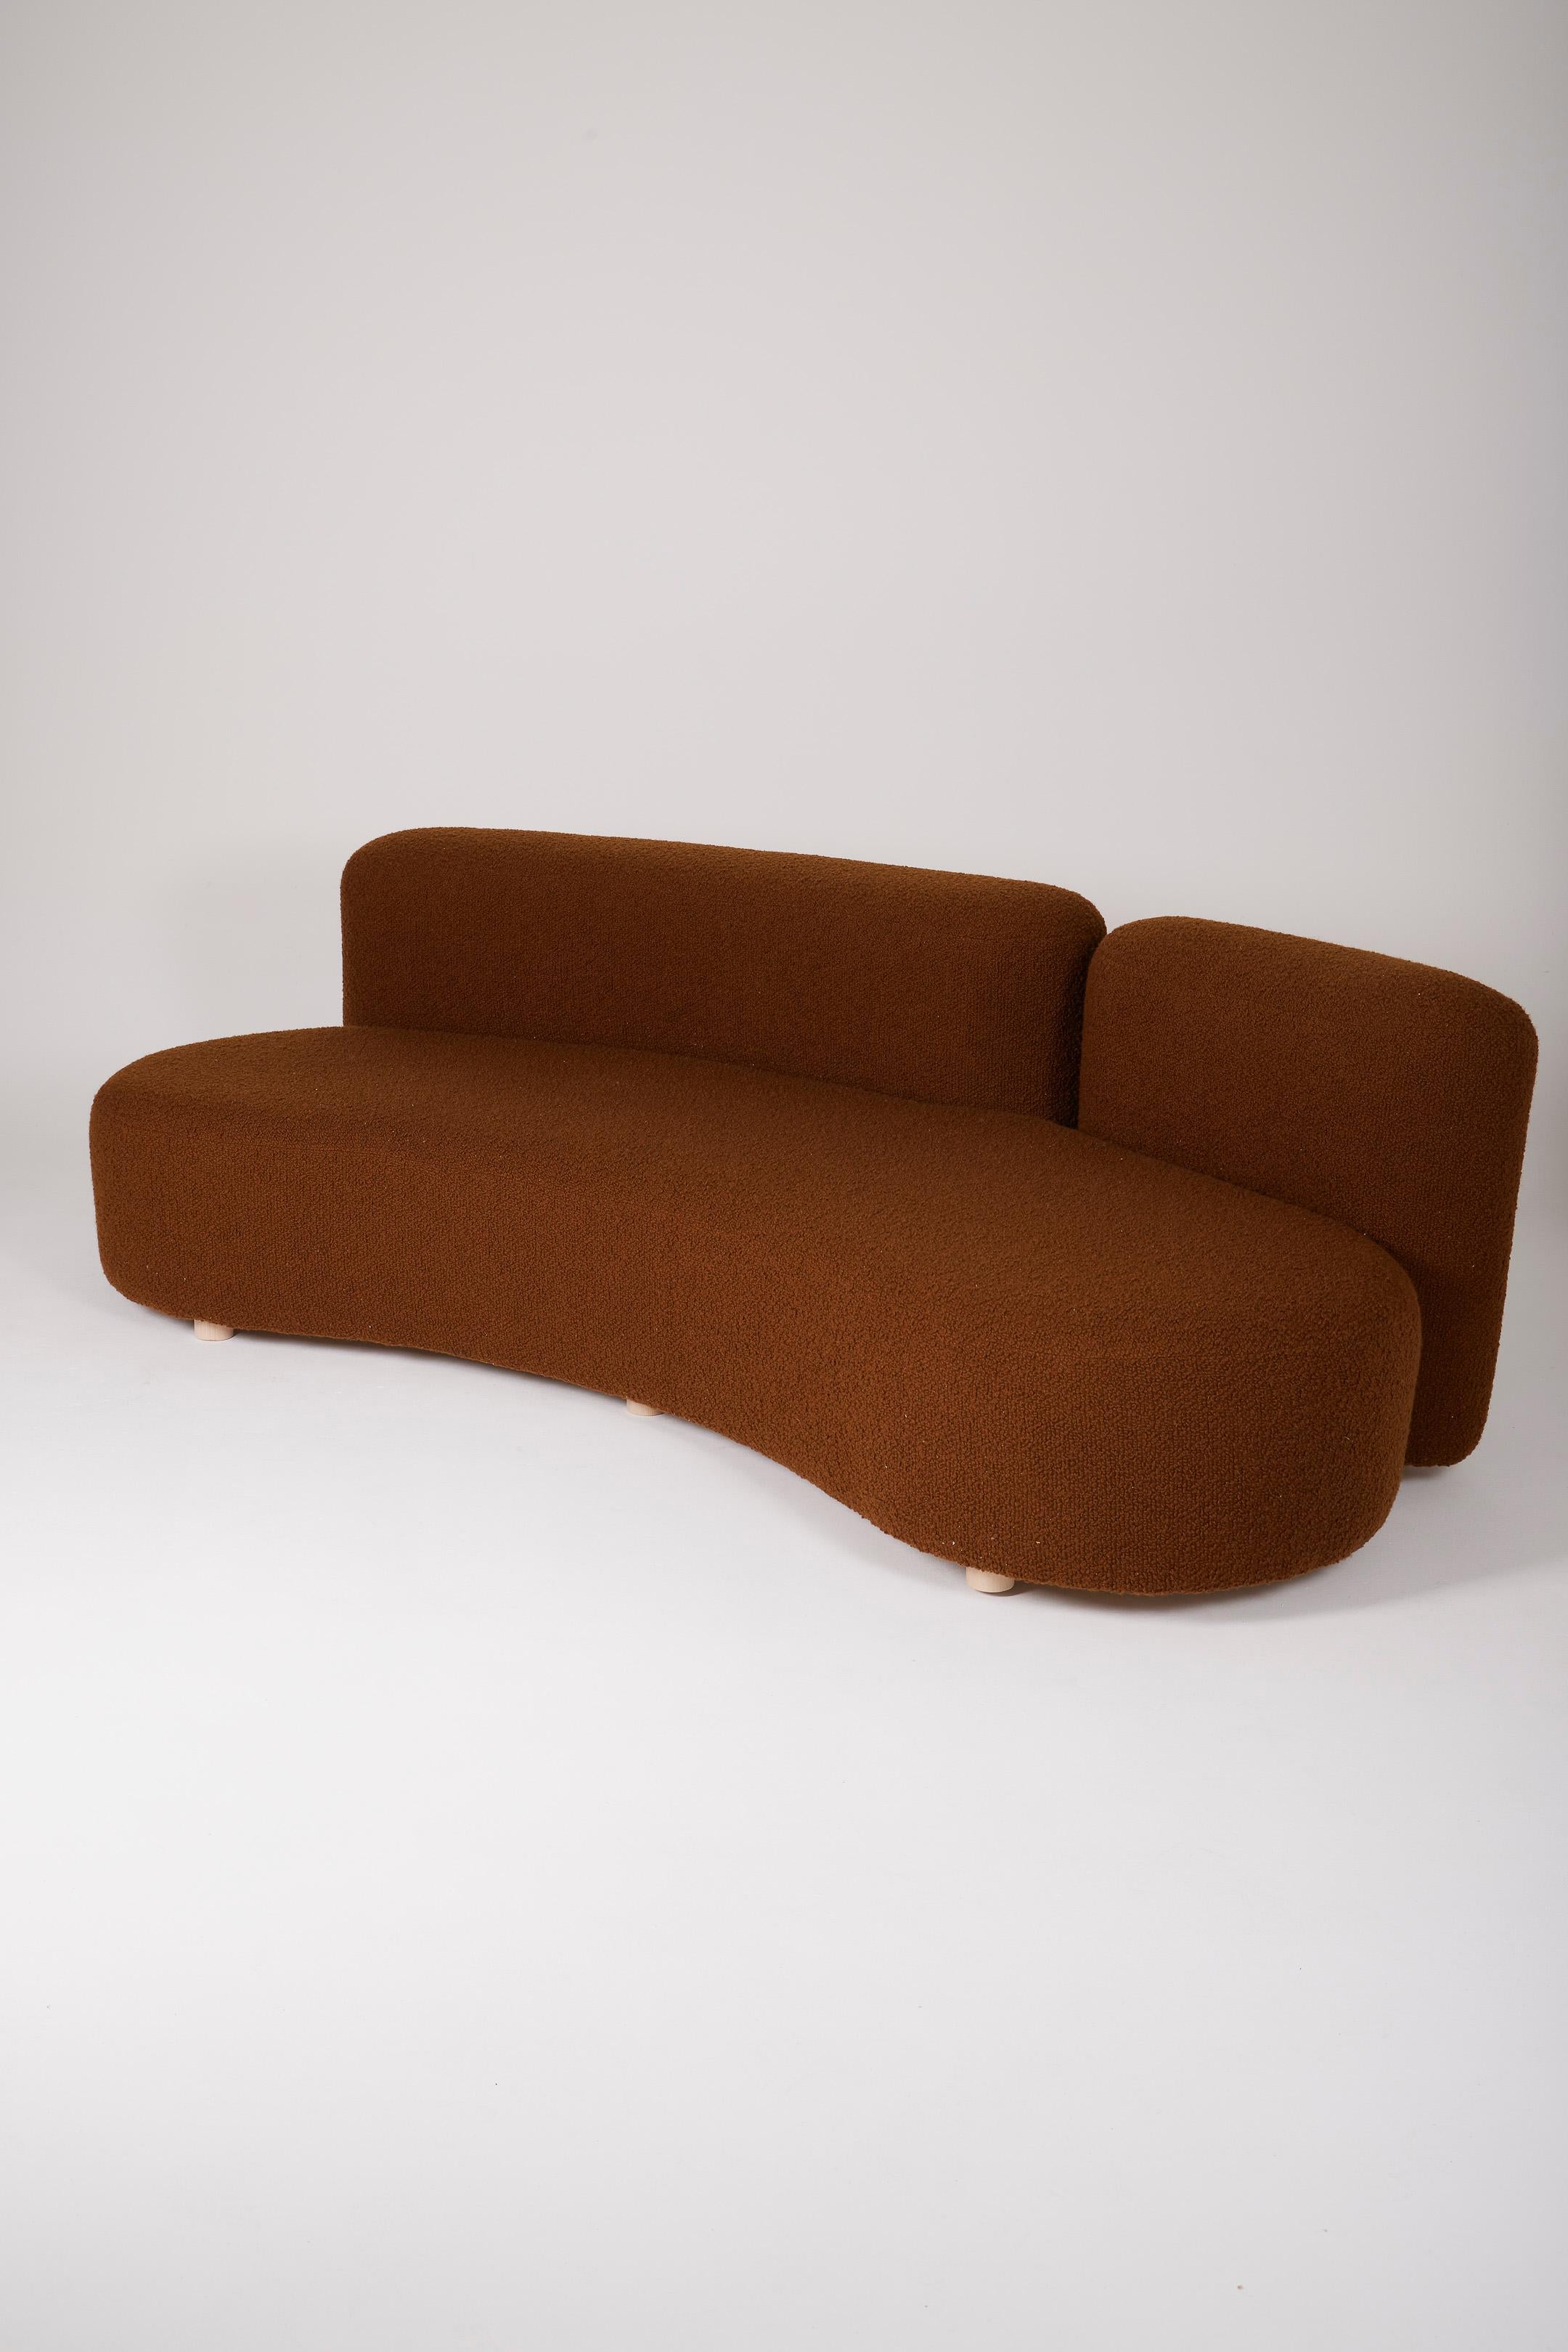 Canapé 3 places en tissu bouclé marron des années 1970. Le canapé est livré avec ses 6 coussins. Excellent état.
DV525